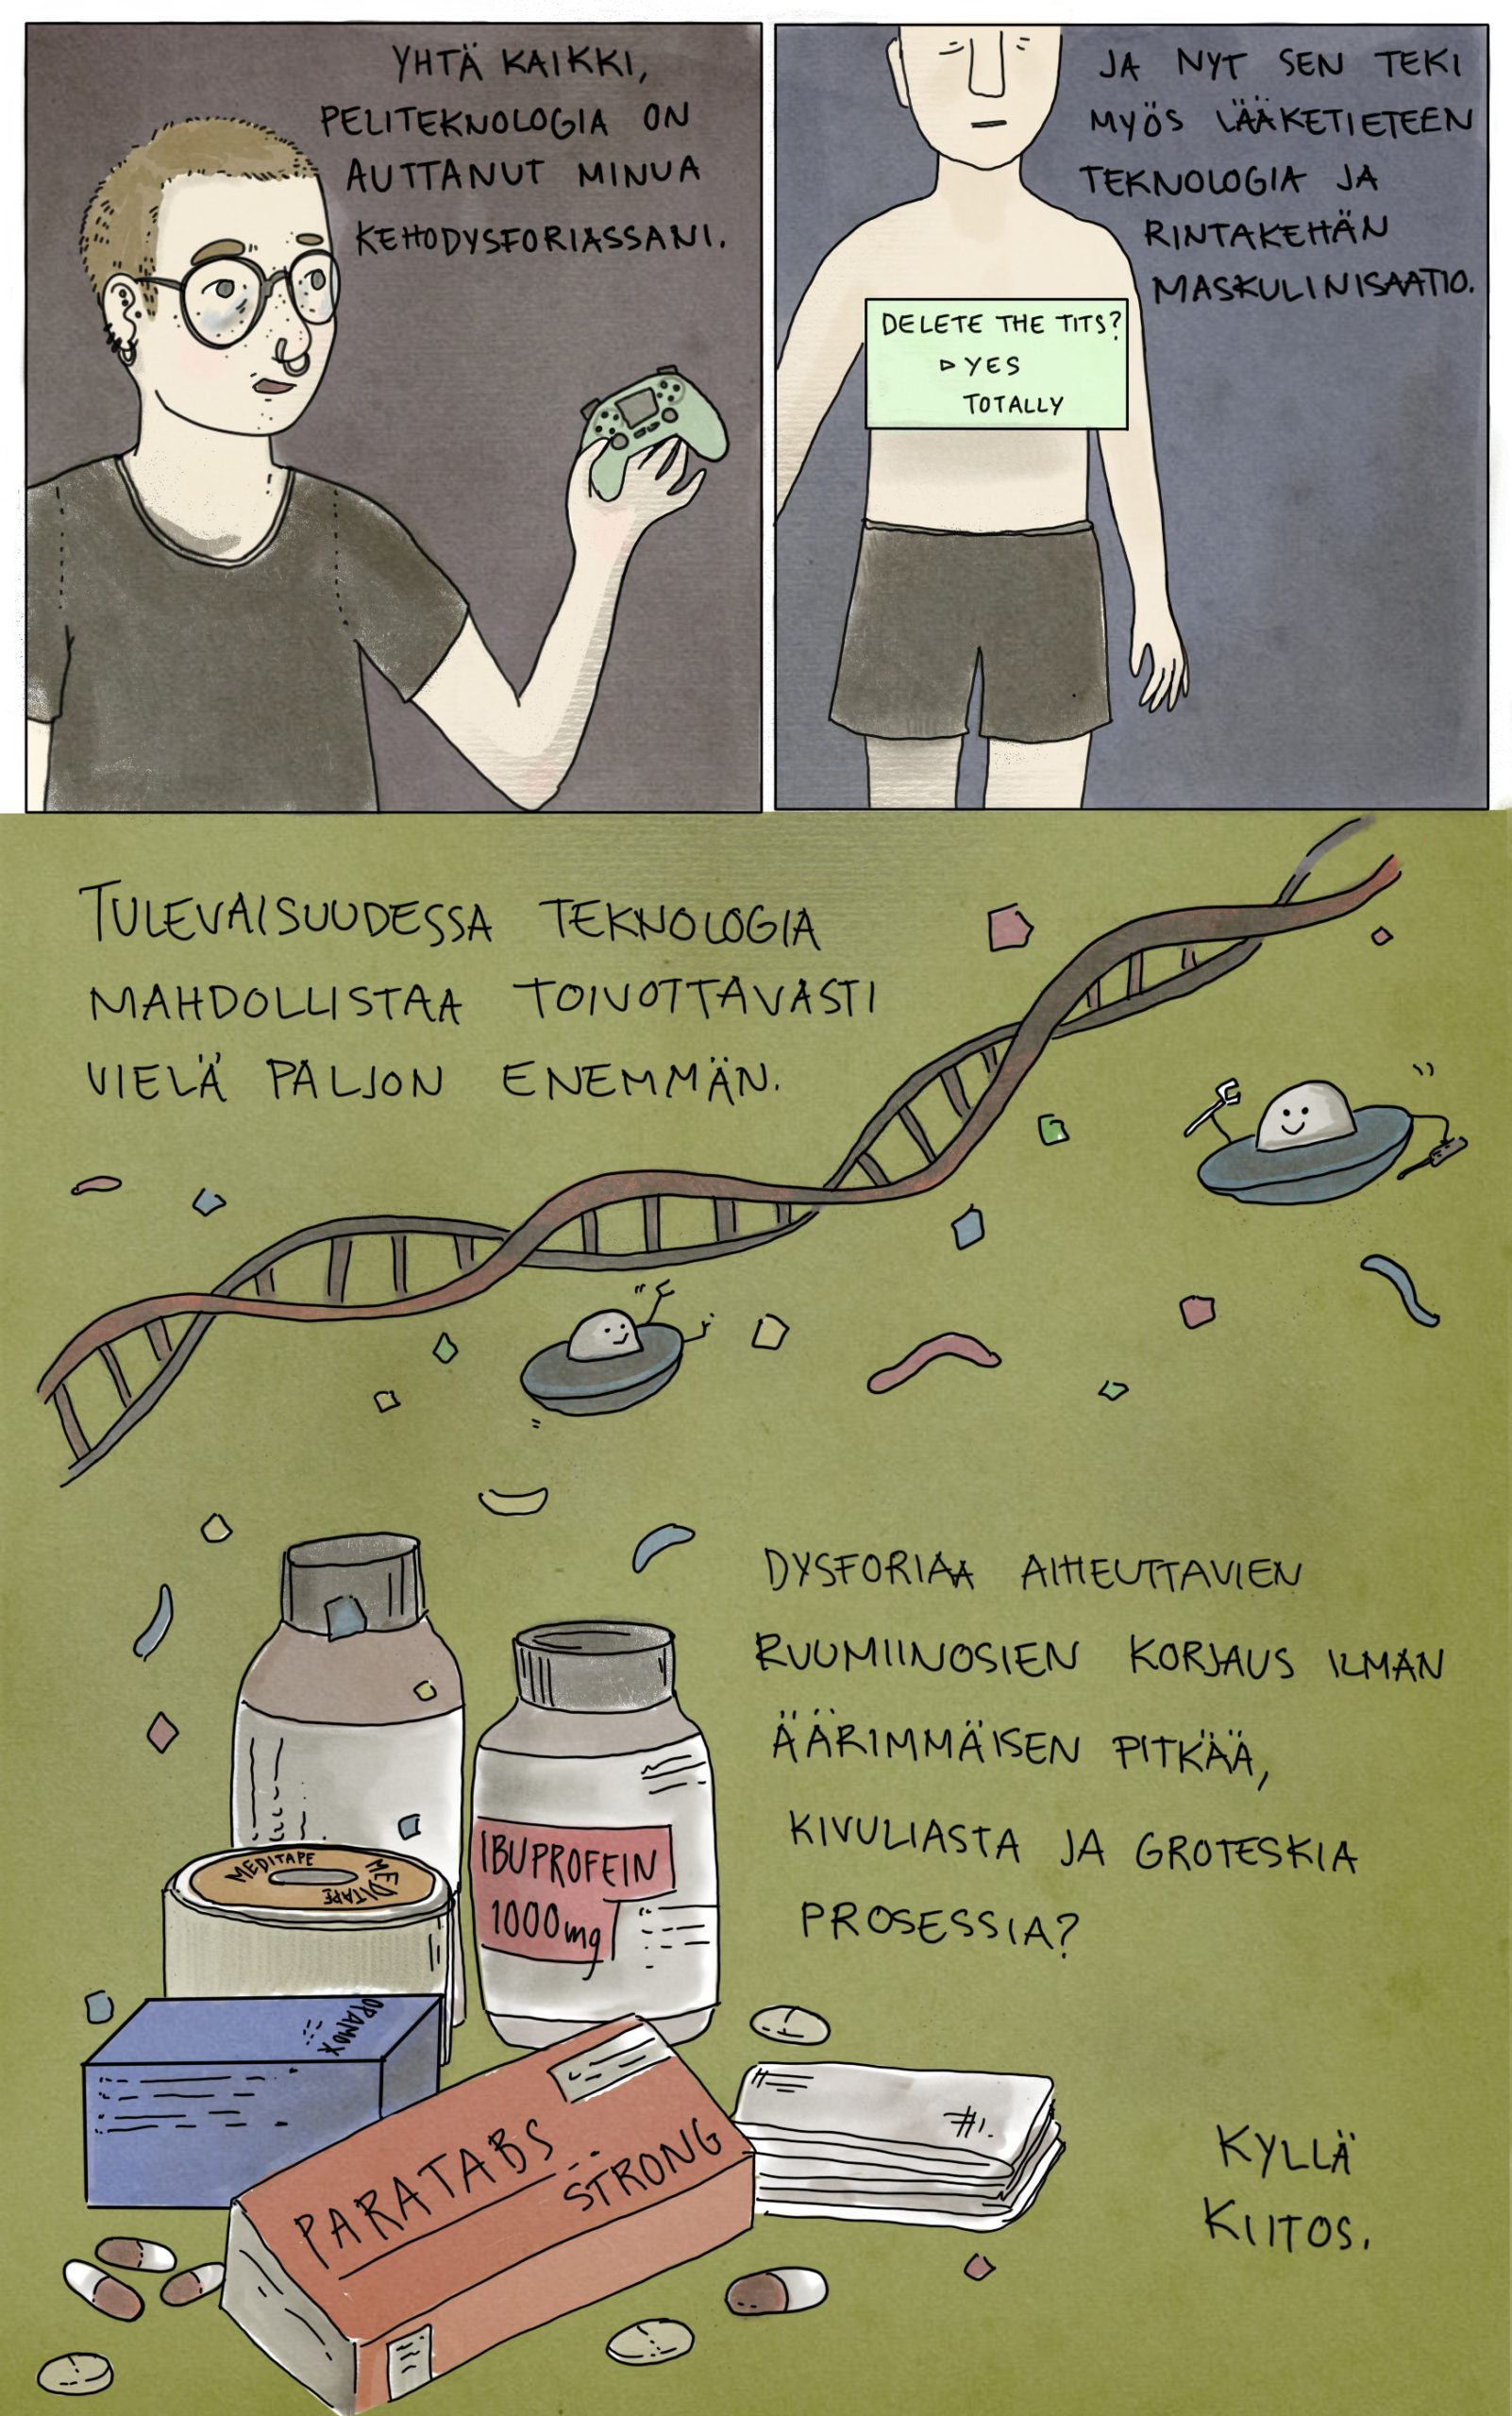 Sivu Ahma Hokkasen sarjakuvasta Teknisesti trans